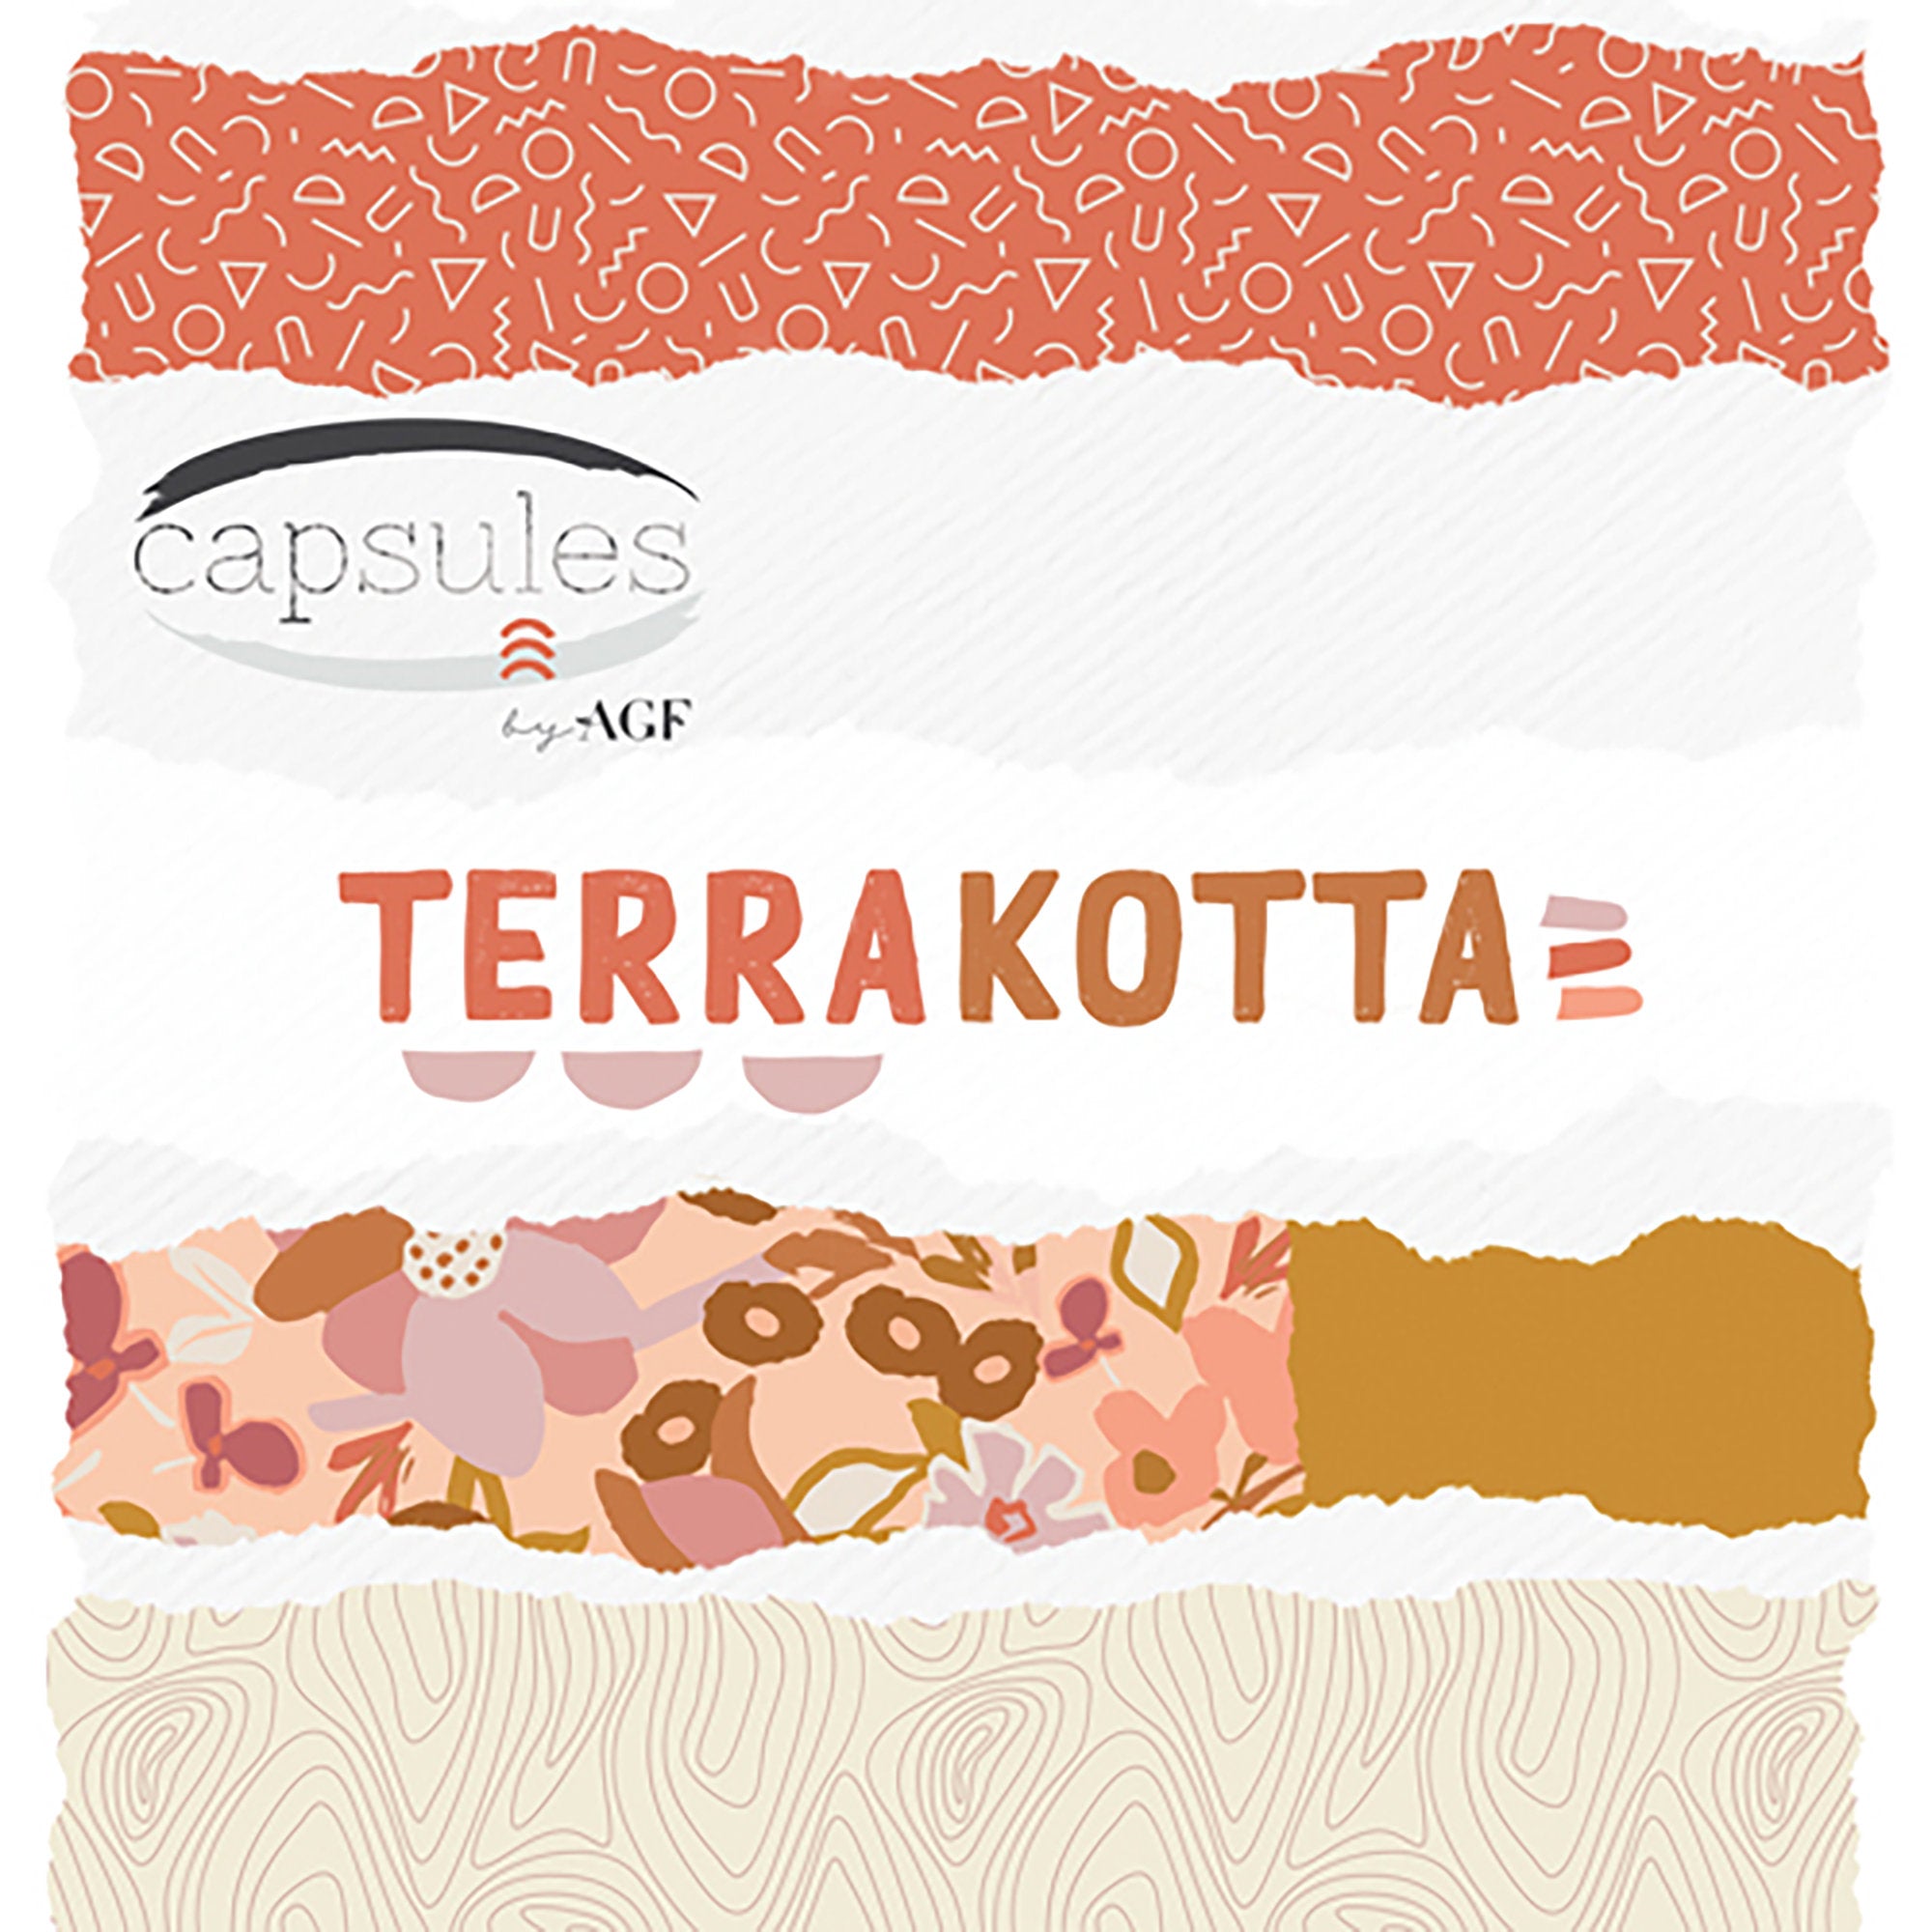 TerraKotta - Sunbaked Tile